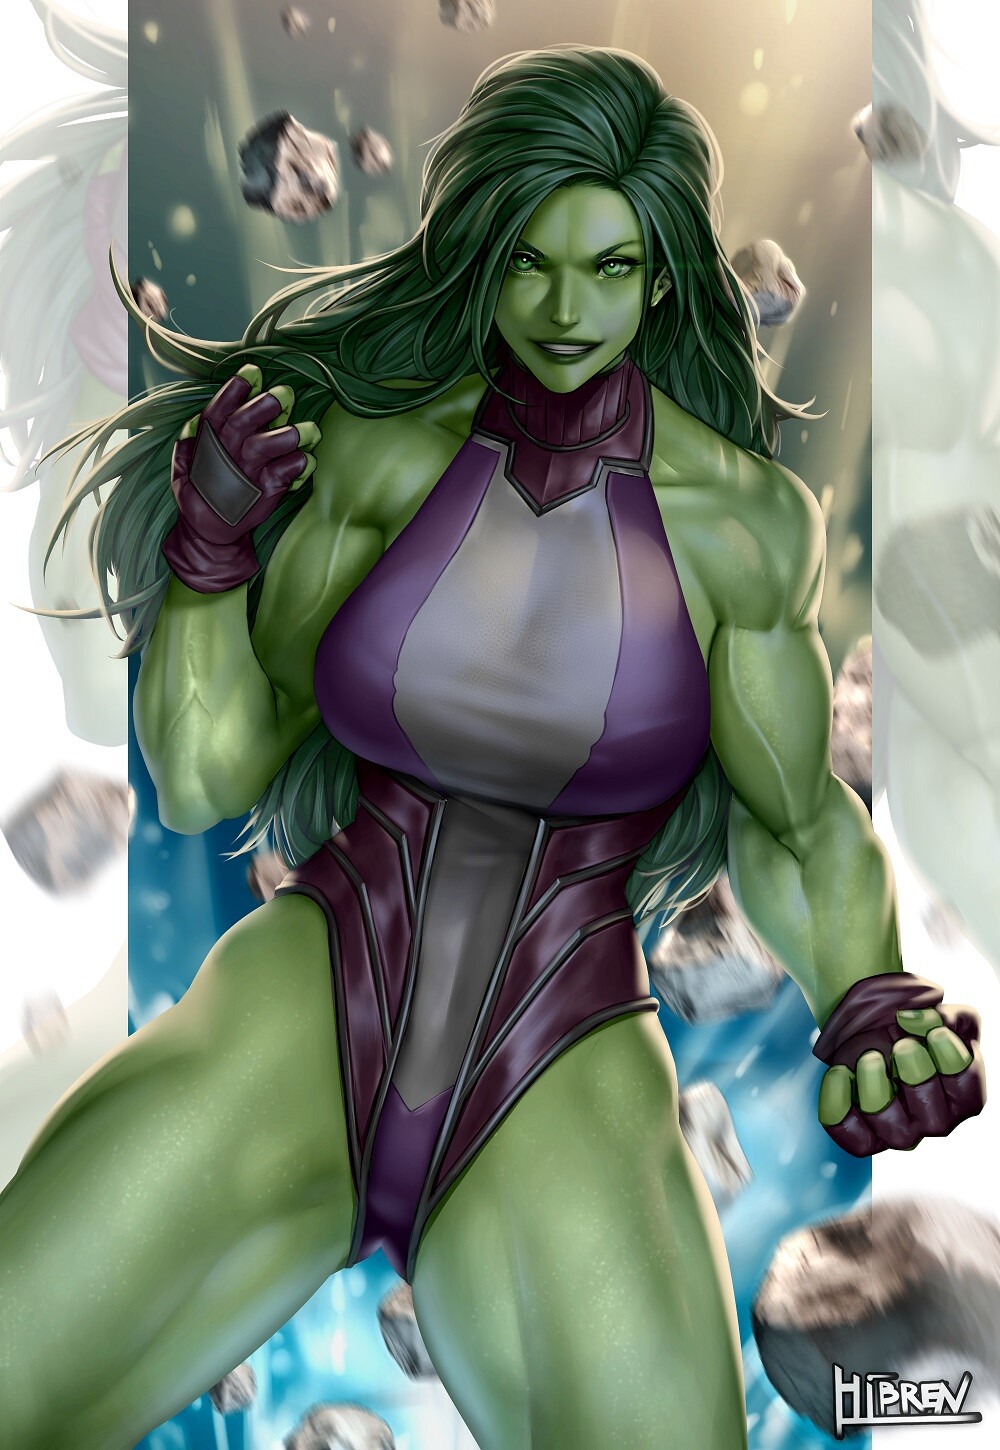 She Hulk fanart.